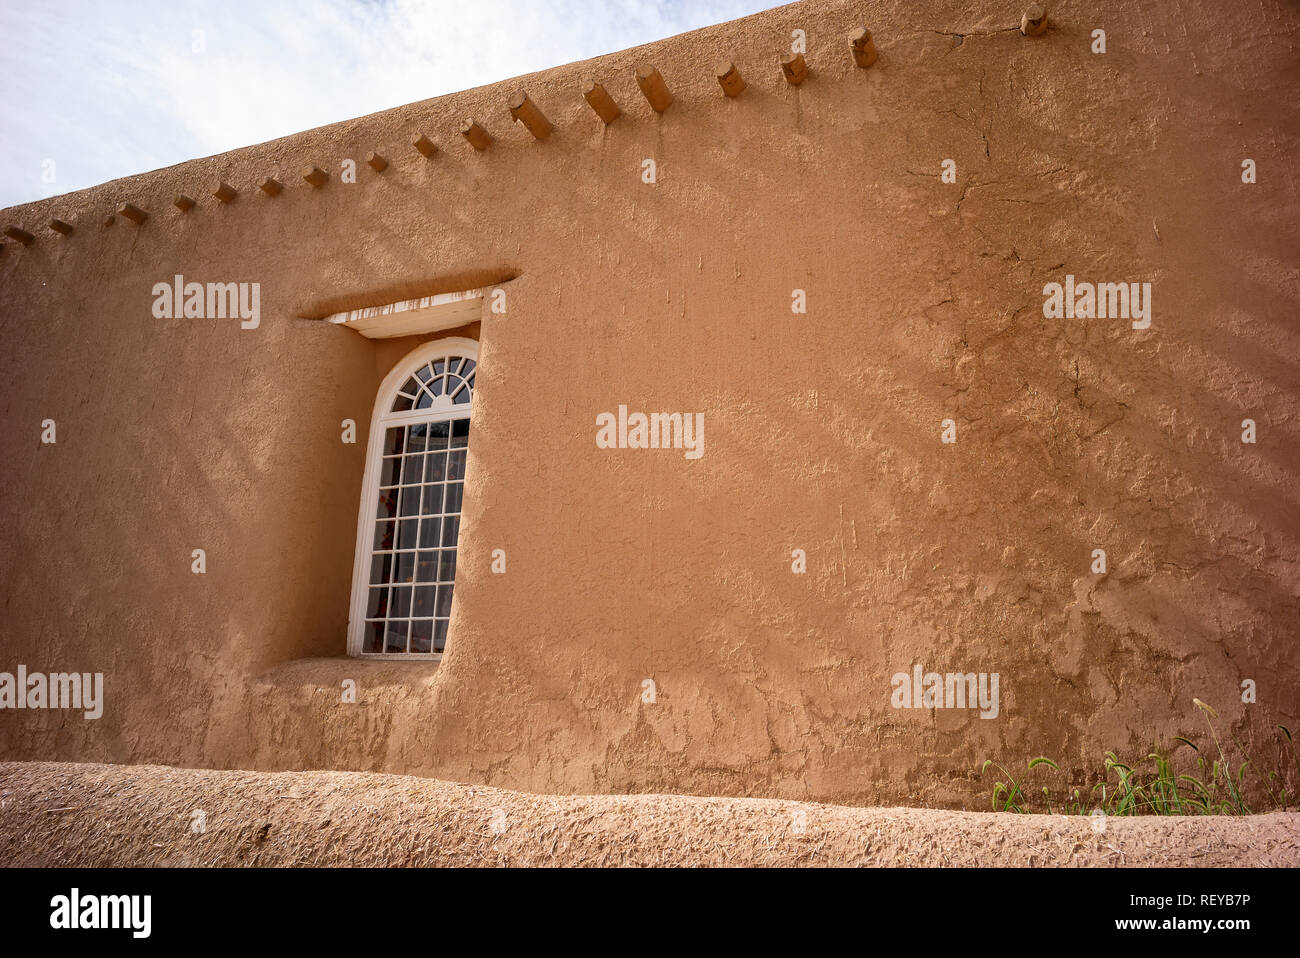 Shadows on a wall and window of San Francisco de Asis adobe church in Ranchos de Taos, New Mexico, USA Stock Photo